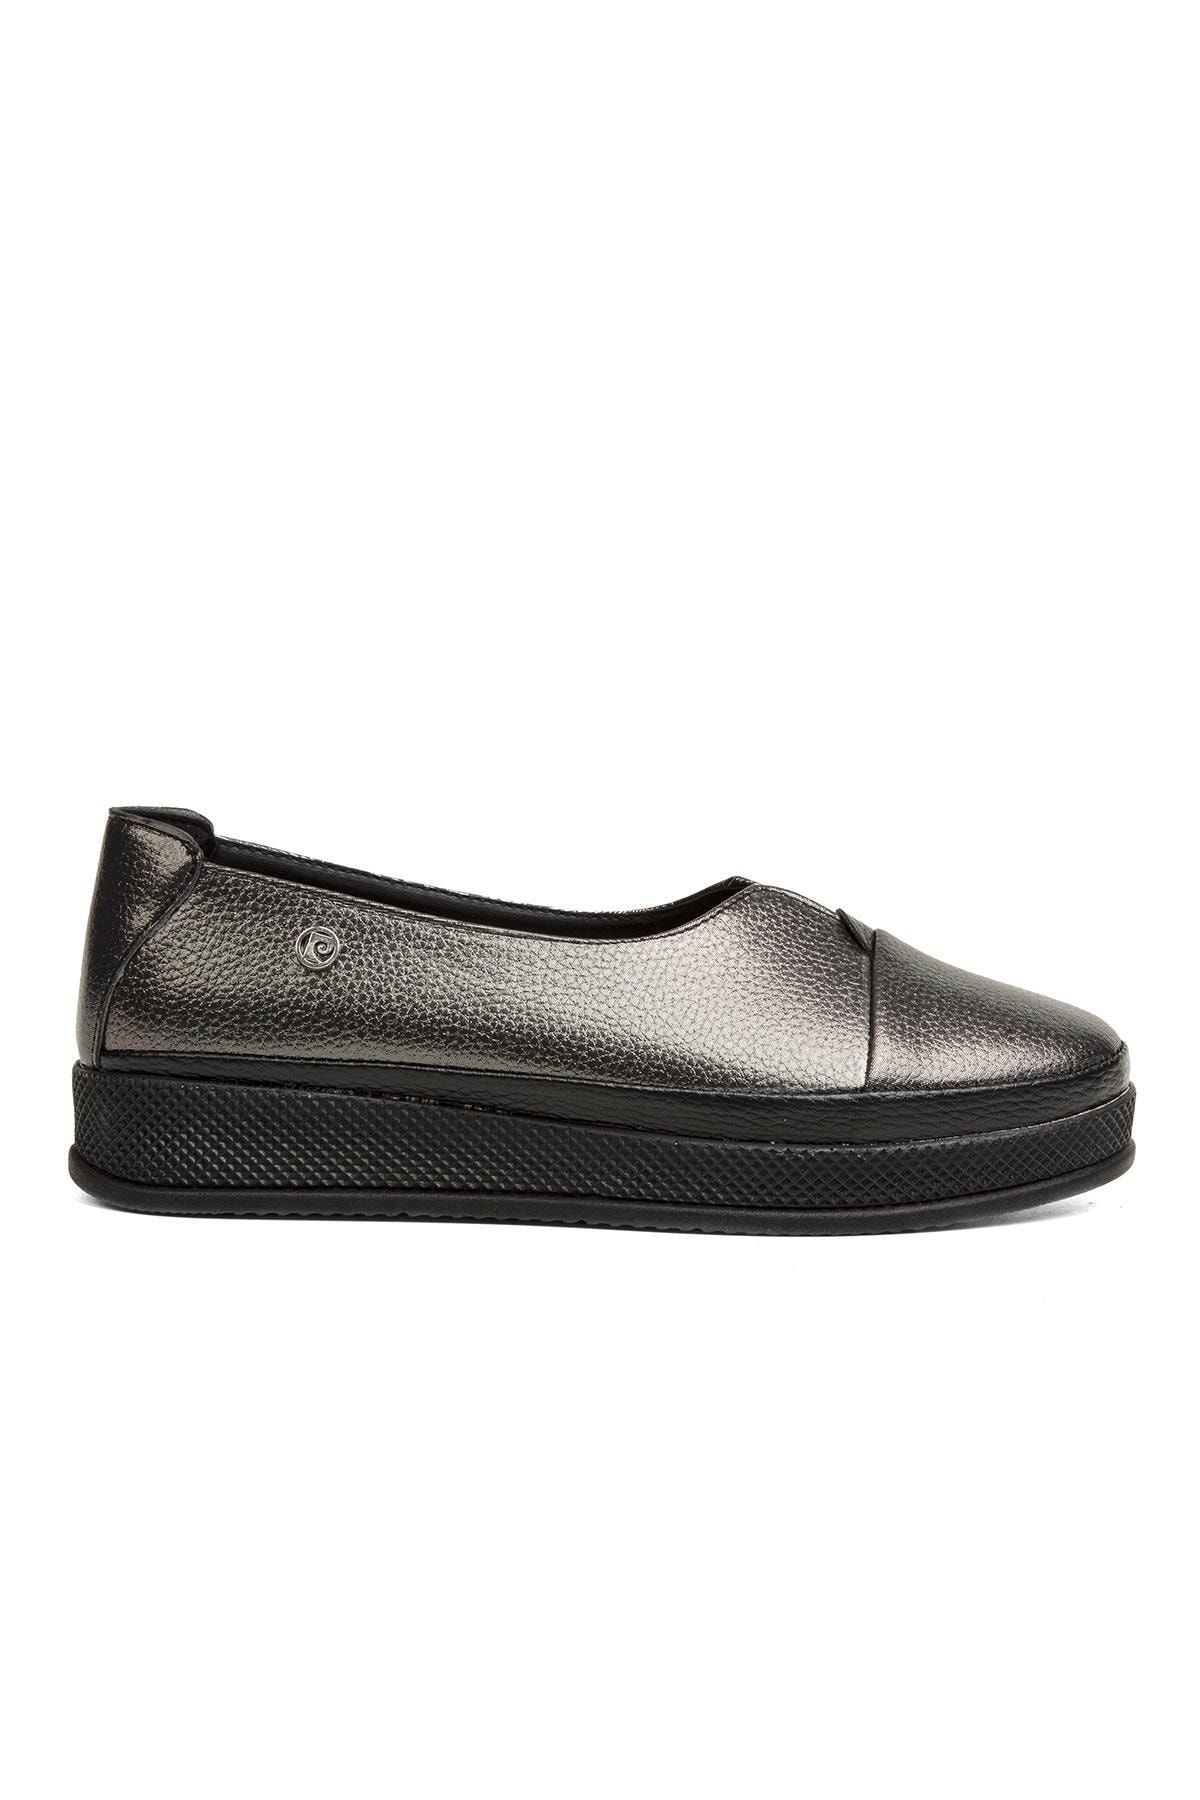 Pierre Cardin ® | Pc-51922-3530 Platin - Kadın Günlük Ayakkabı